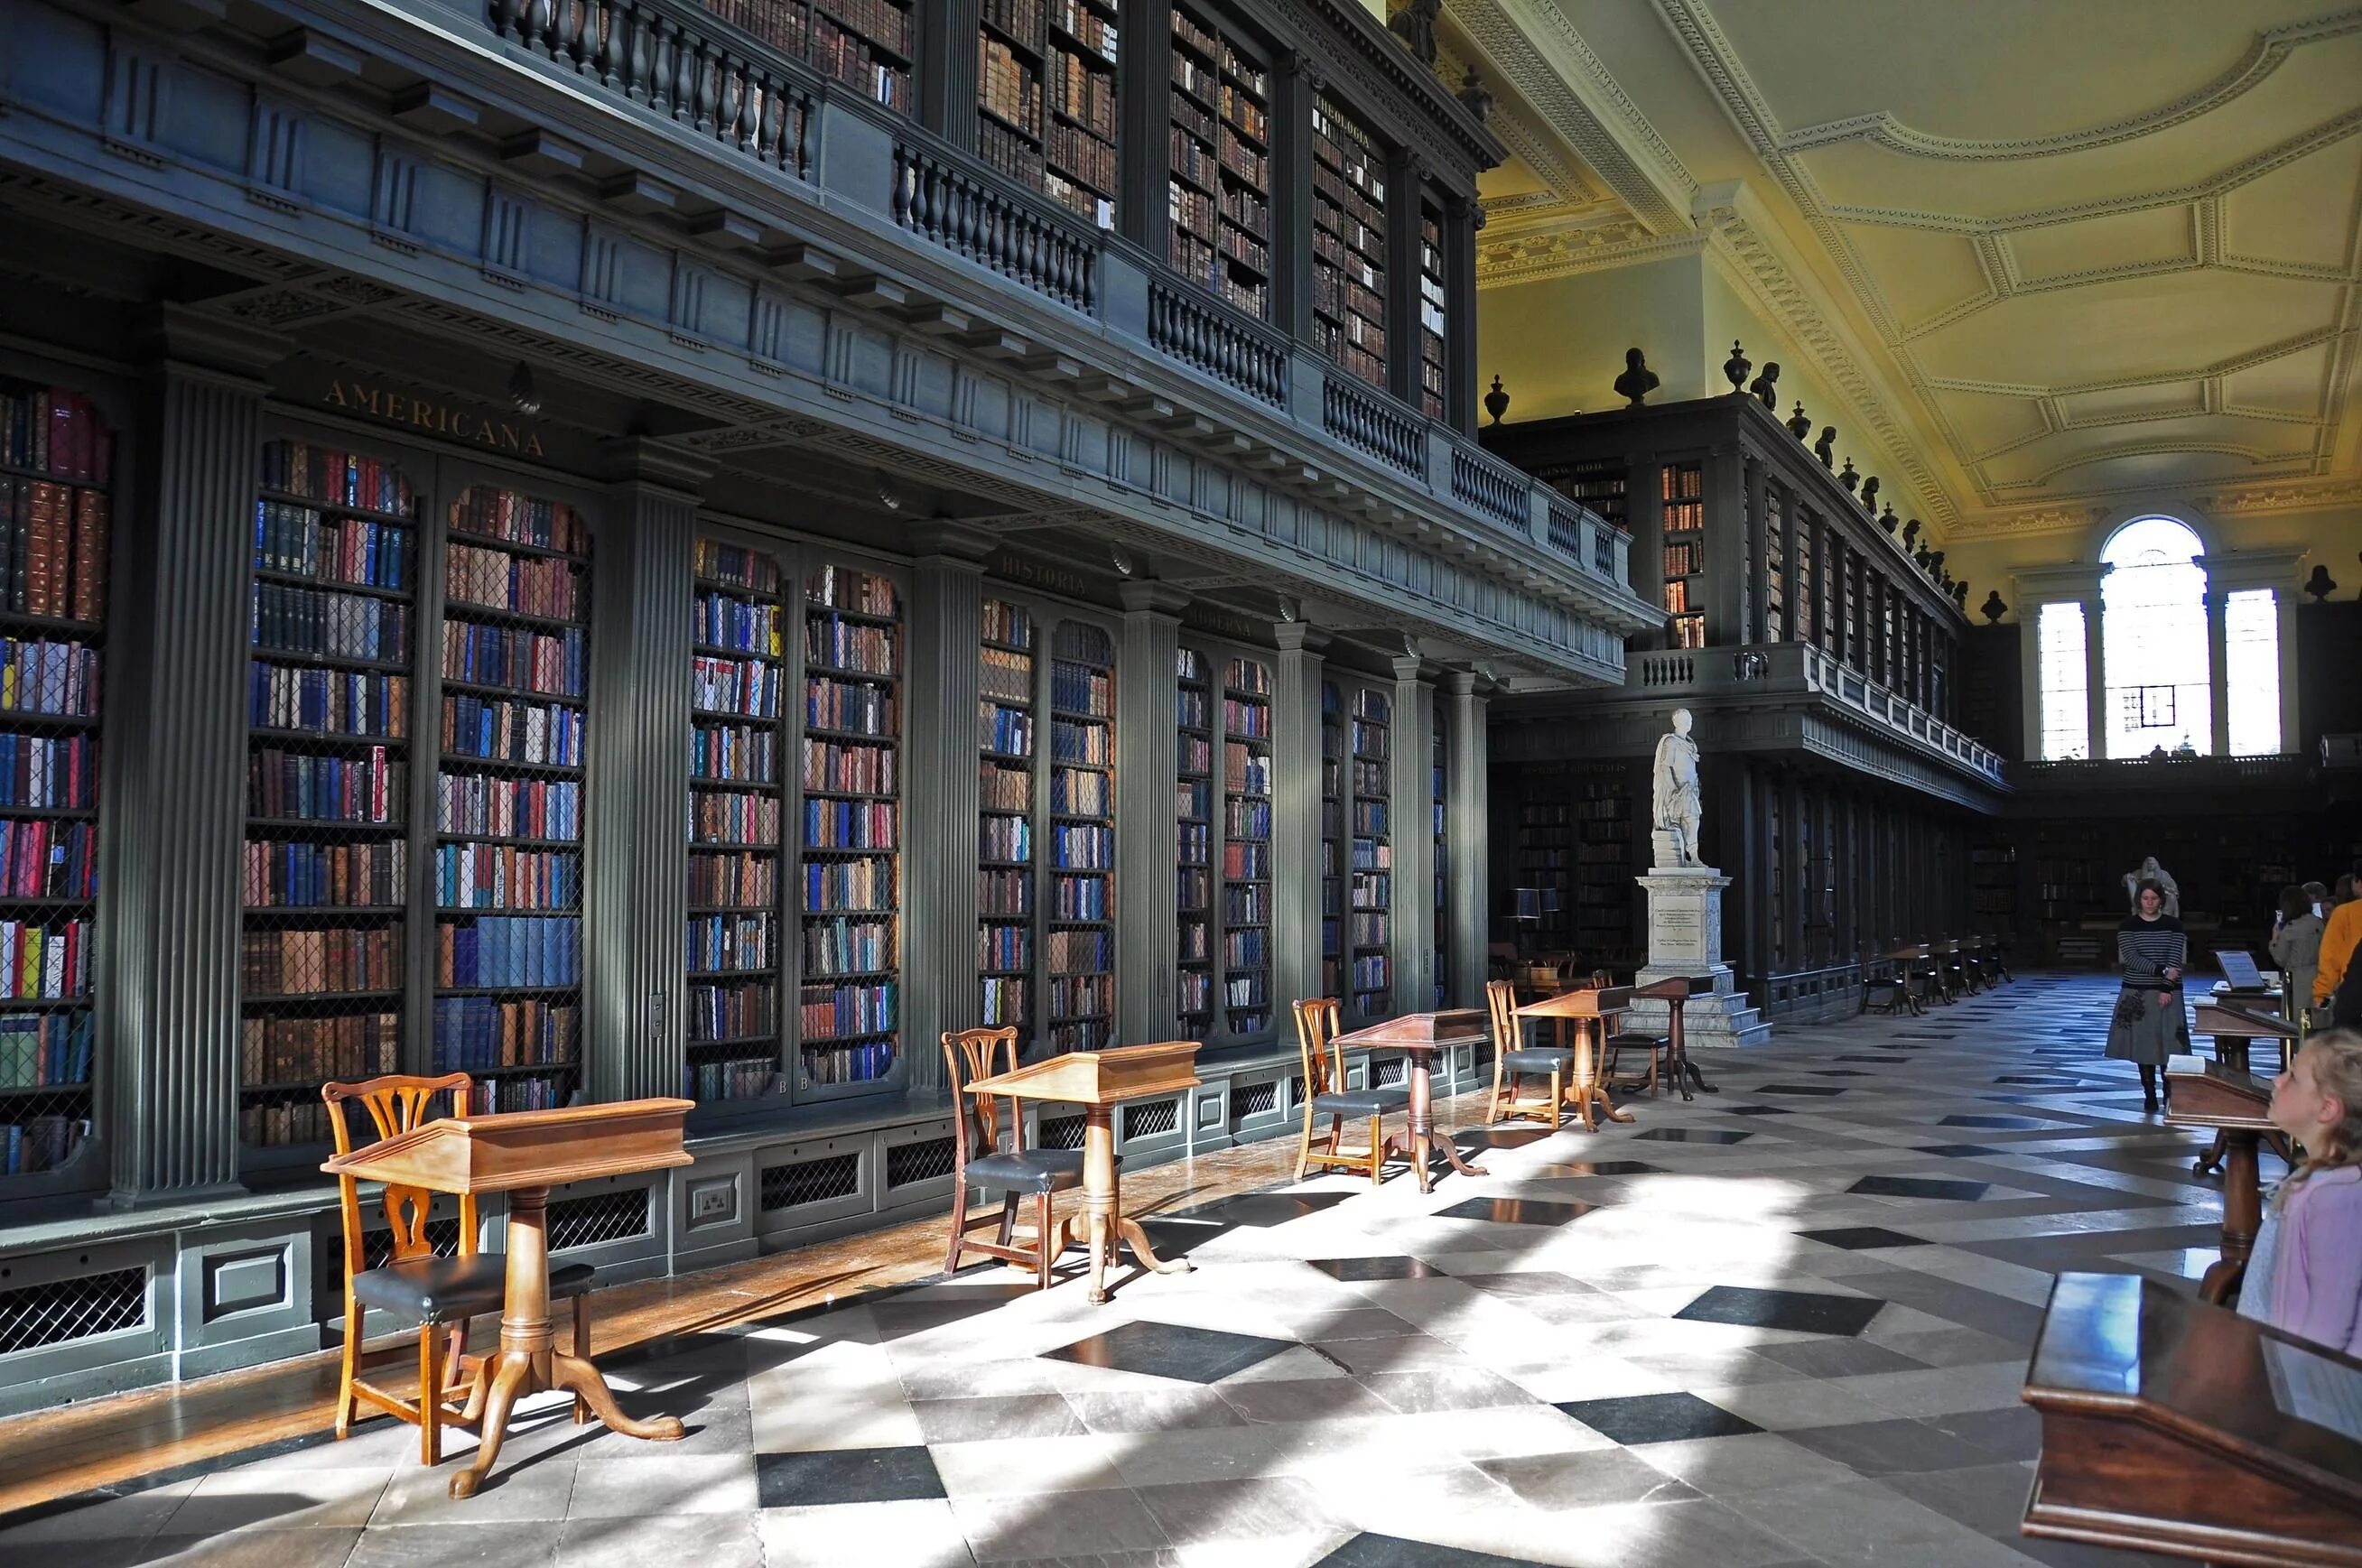 Cc library. Библиотека Кодрингтон Великобритания. Библиотека Тринити колледжа в Оксфорде. Оксфордский университет библиотека. Оксфорд университет Бодлианская библиотека.